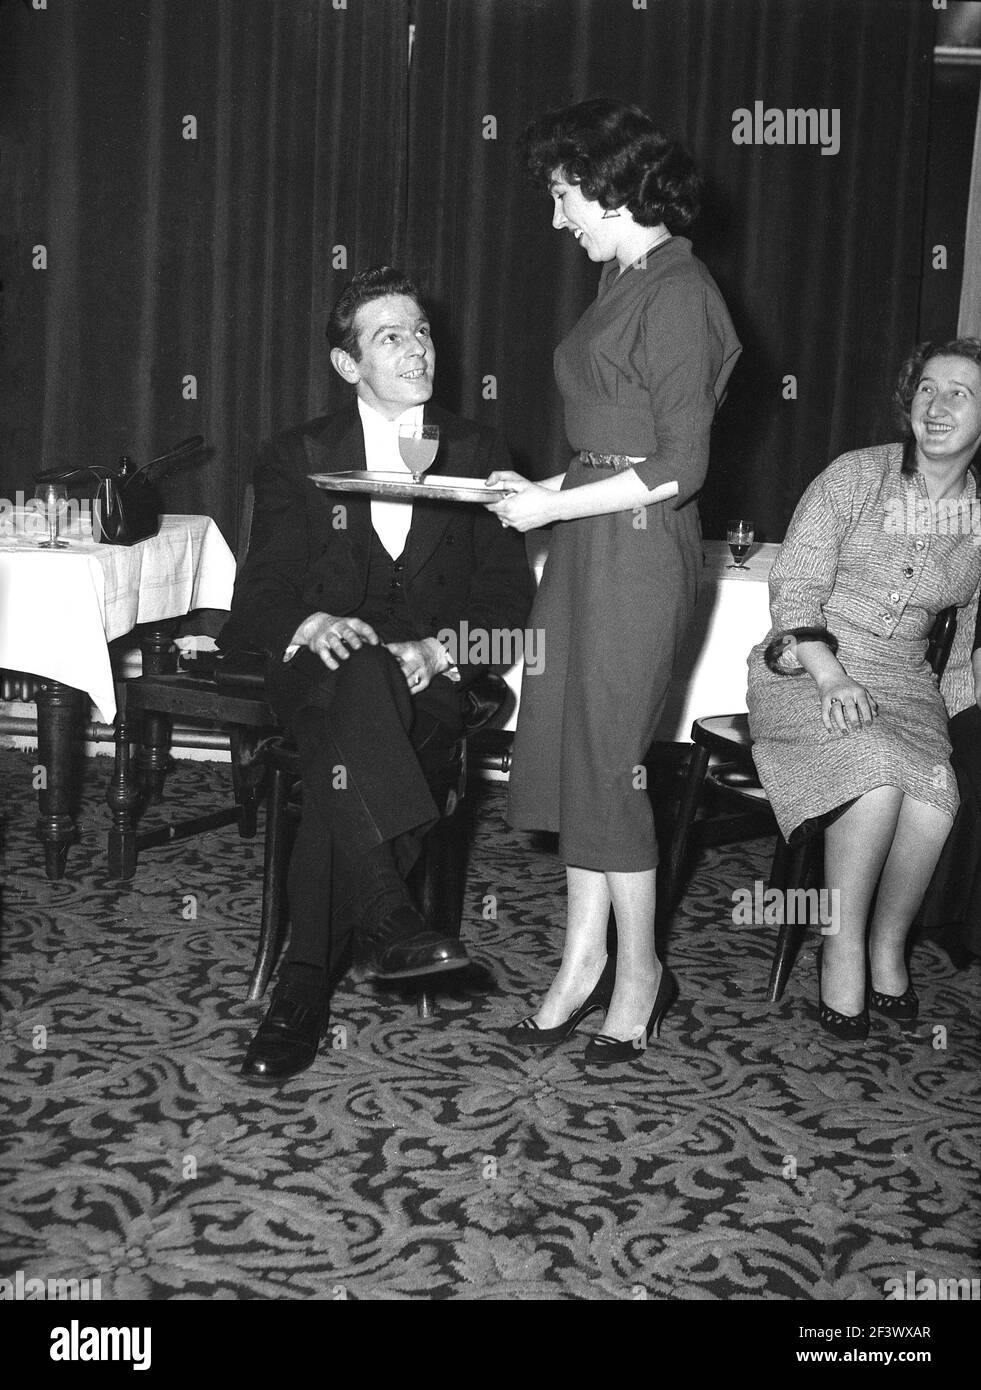 1957, storica, all'interno di una sala funzioni di un hotel, una giovane donna attraente che porta un vassoio con un drink per un uomo in una giacca da pranzo, forse il leader della band, al divertimento di una ospite femminile seduto vicino, Victoria Hotel, Leeds, Inghilterra, Regno Unito. Foto Stock